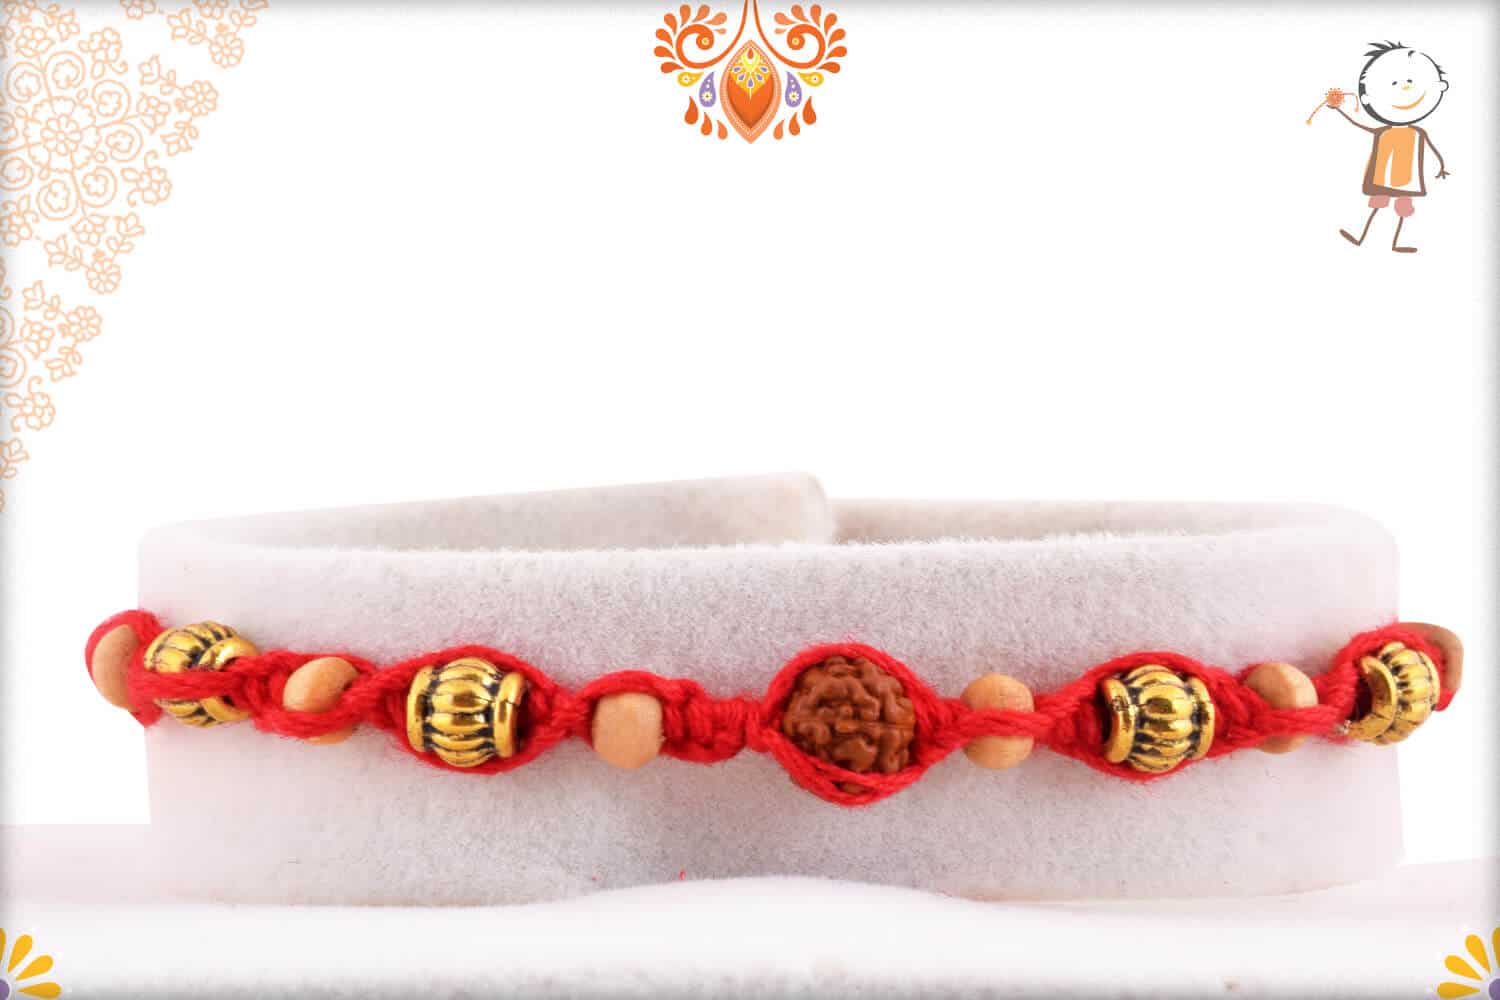 Uniquely Knotted Rudraksh Rakhi with Designer Beads | Send Rakhi Gifts Online 1